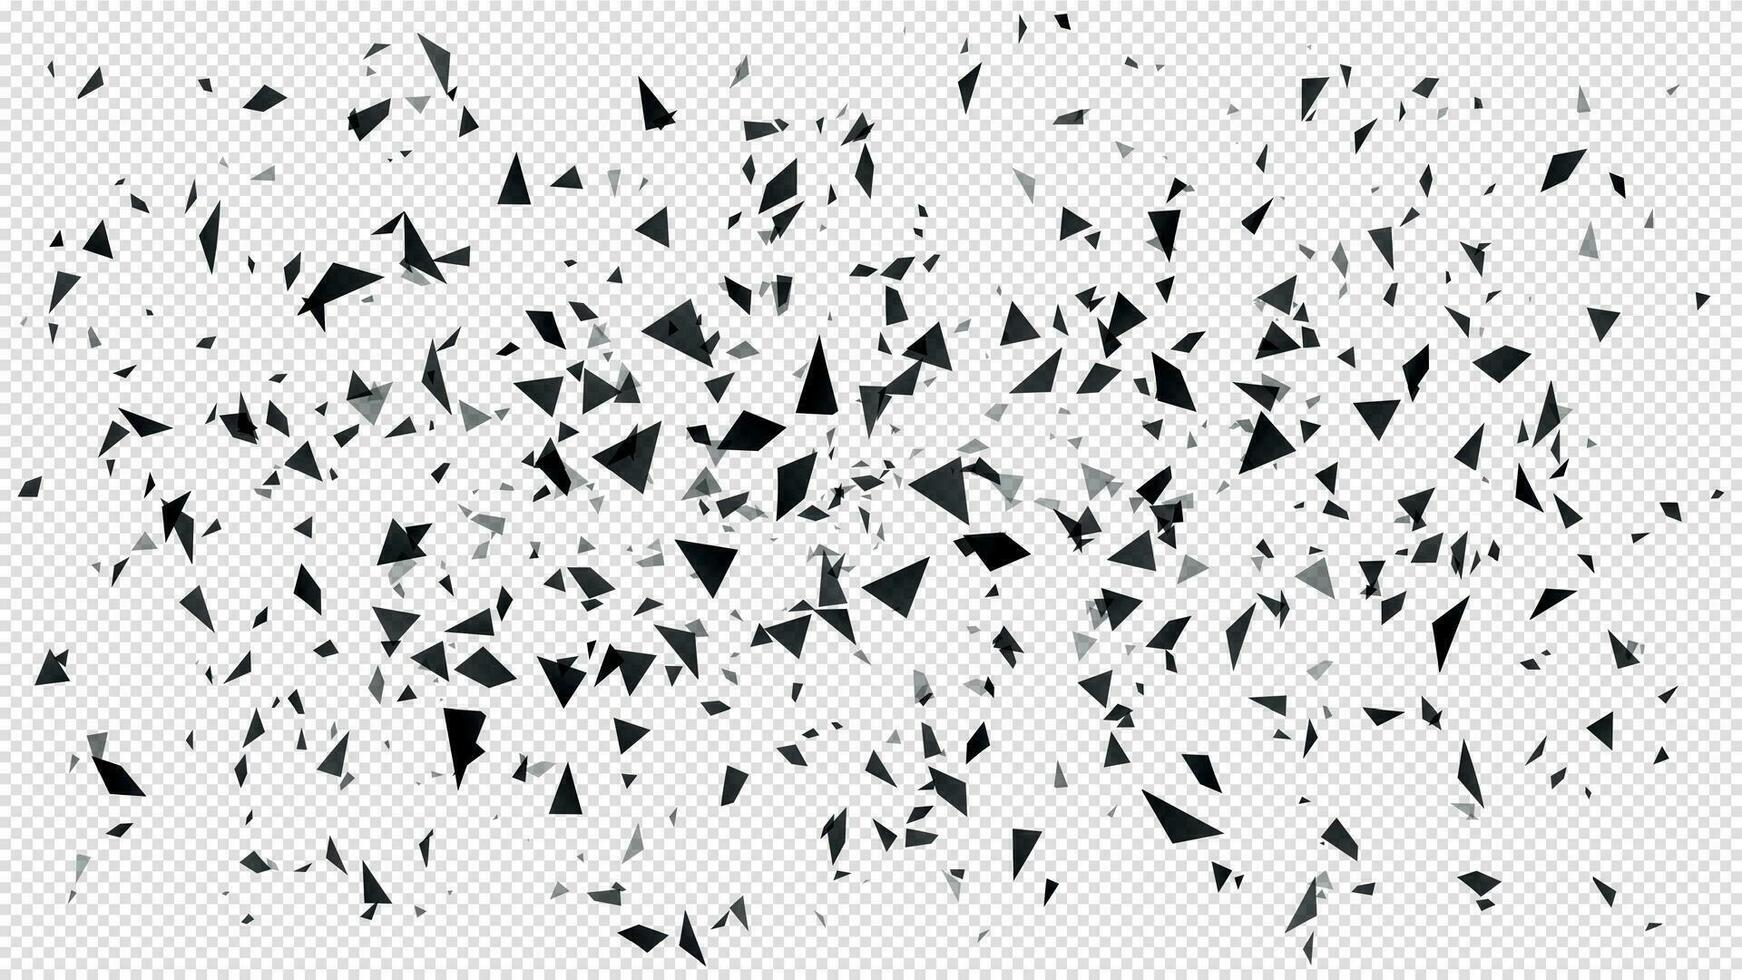 abstrakt splittras partiklar. slumpmässig flygande mörk trianglar partiklar, krossade textur och bruten bitar isolerat explosion vektor illustration